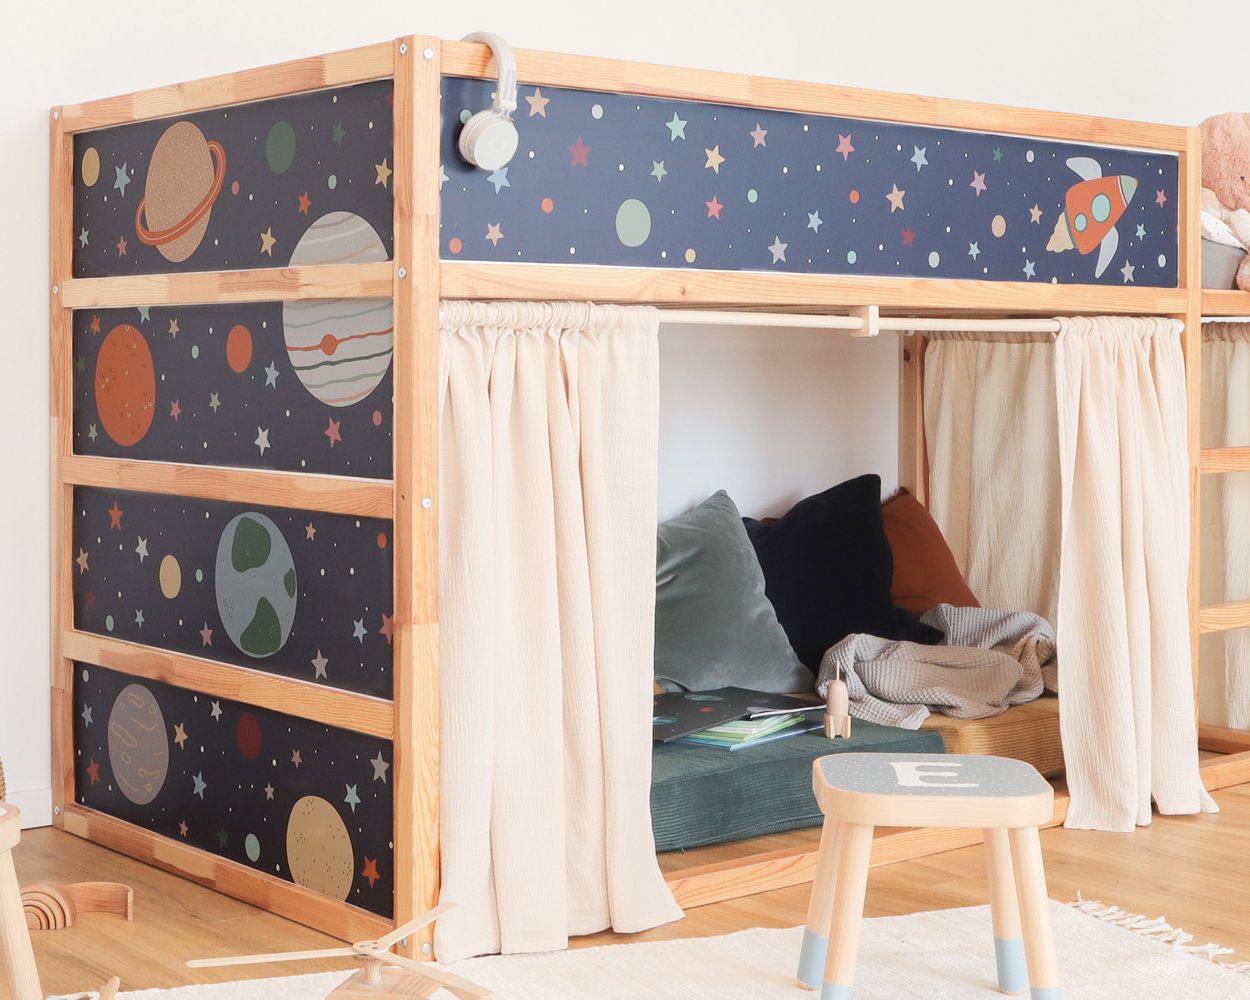 IKEA Kura Hochbett mit Vorhängen und Weltraumstickern